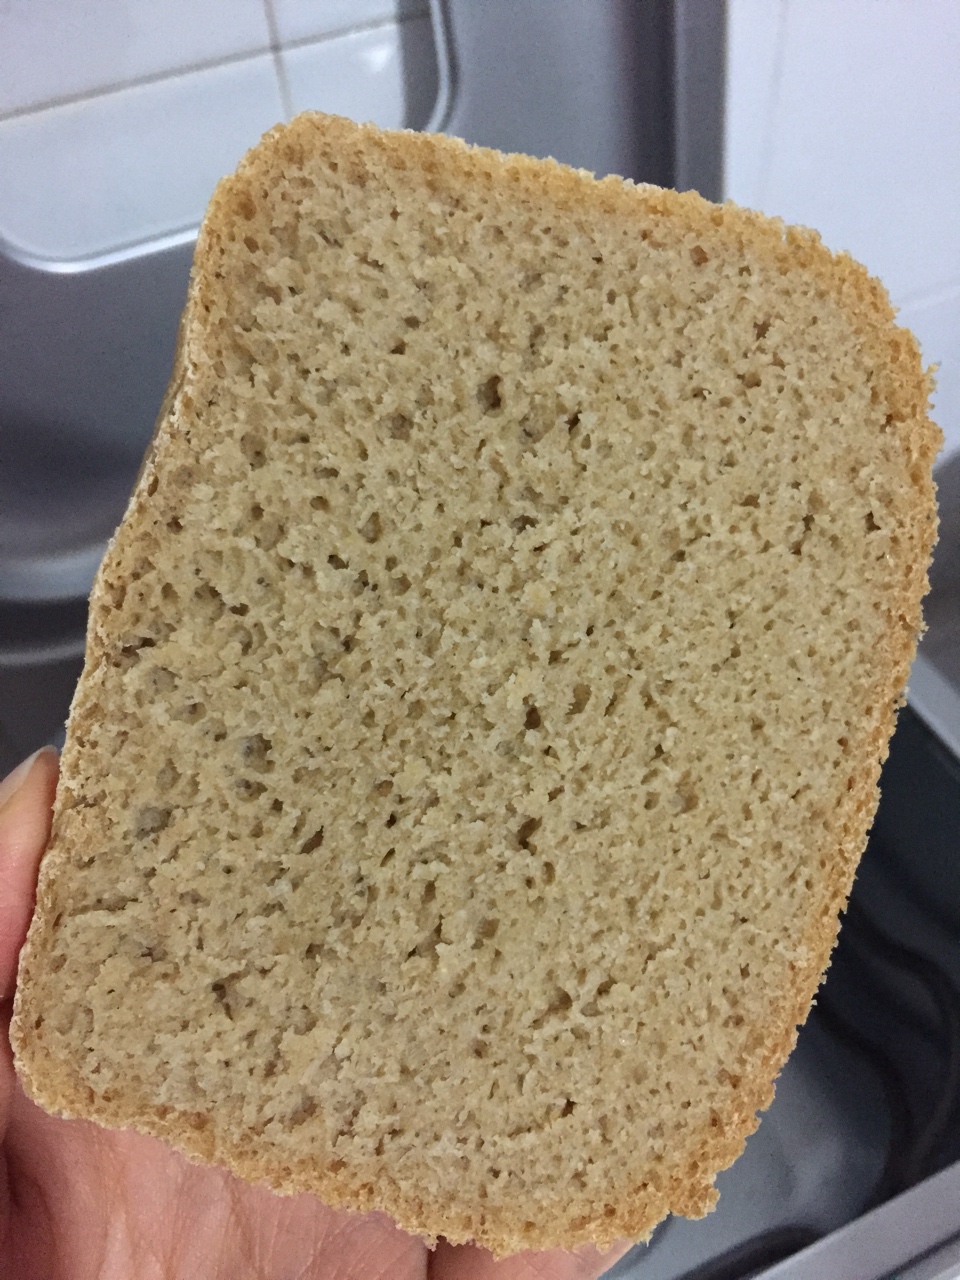 100%全麦面包-pt1000面包机